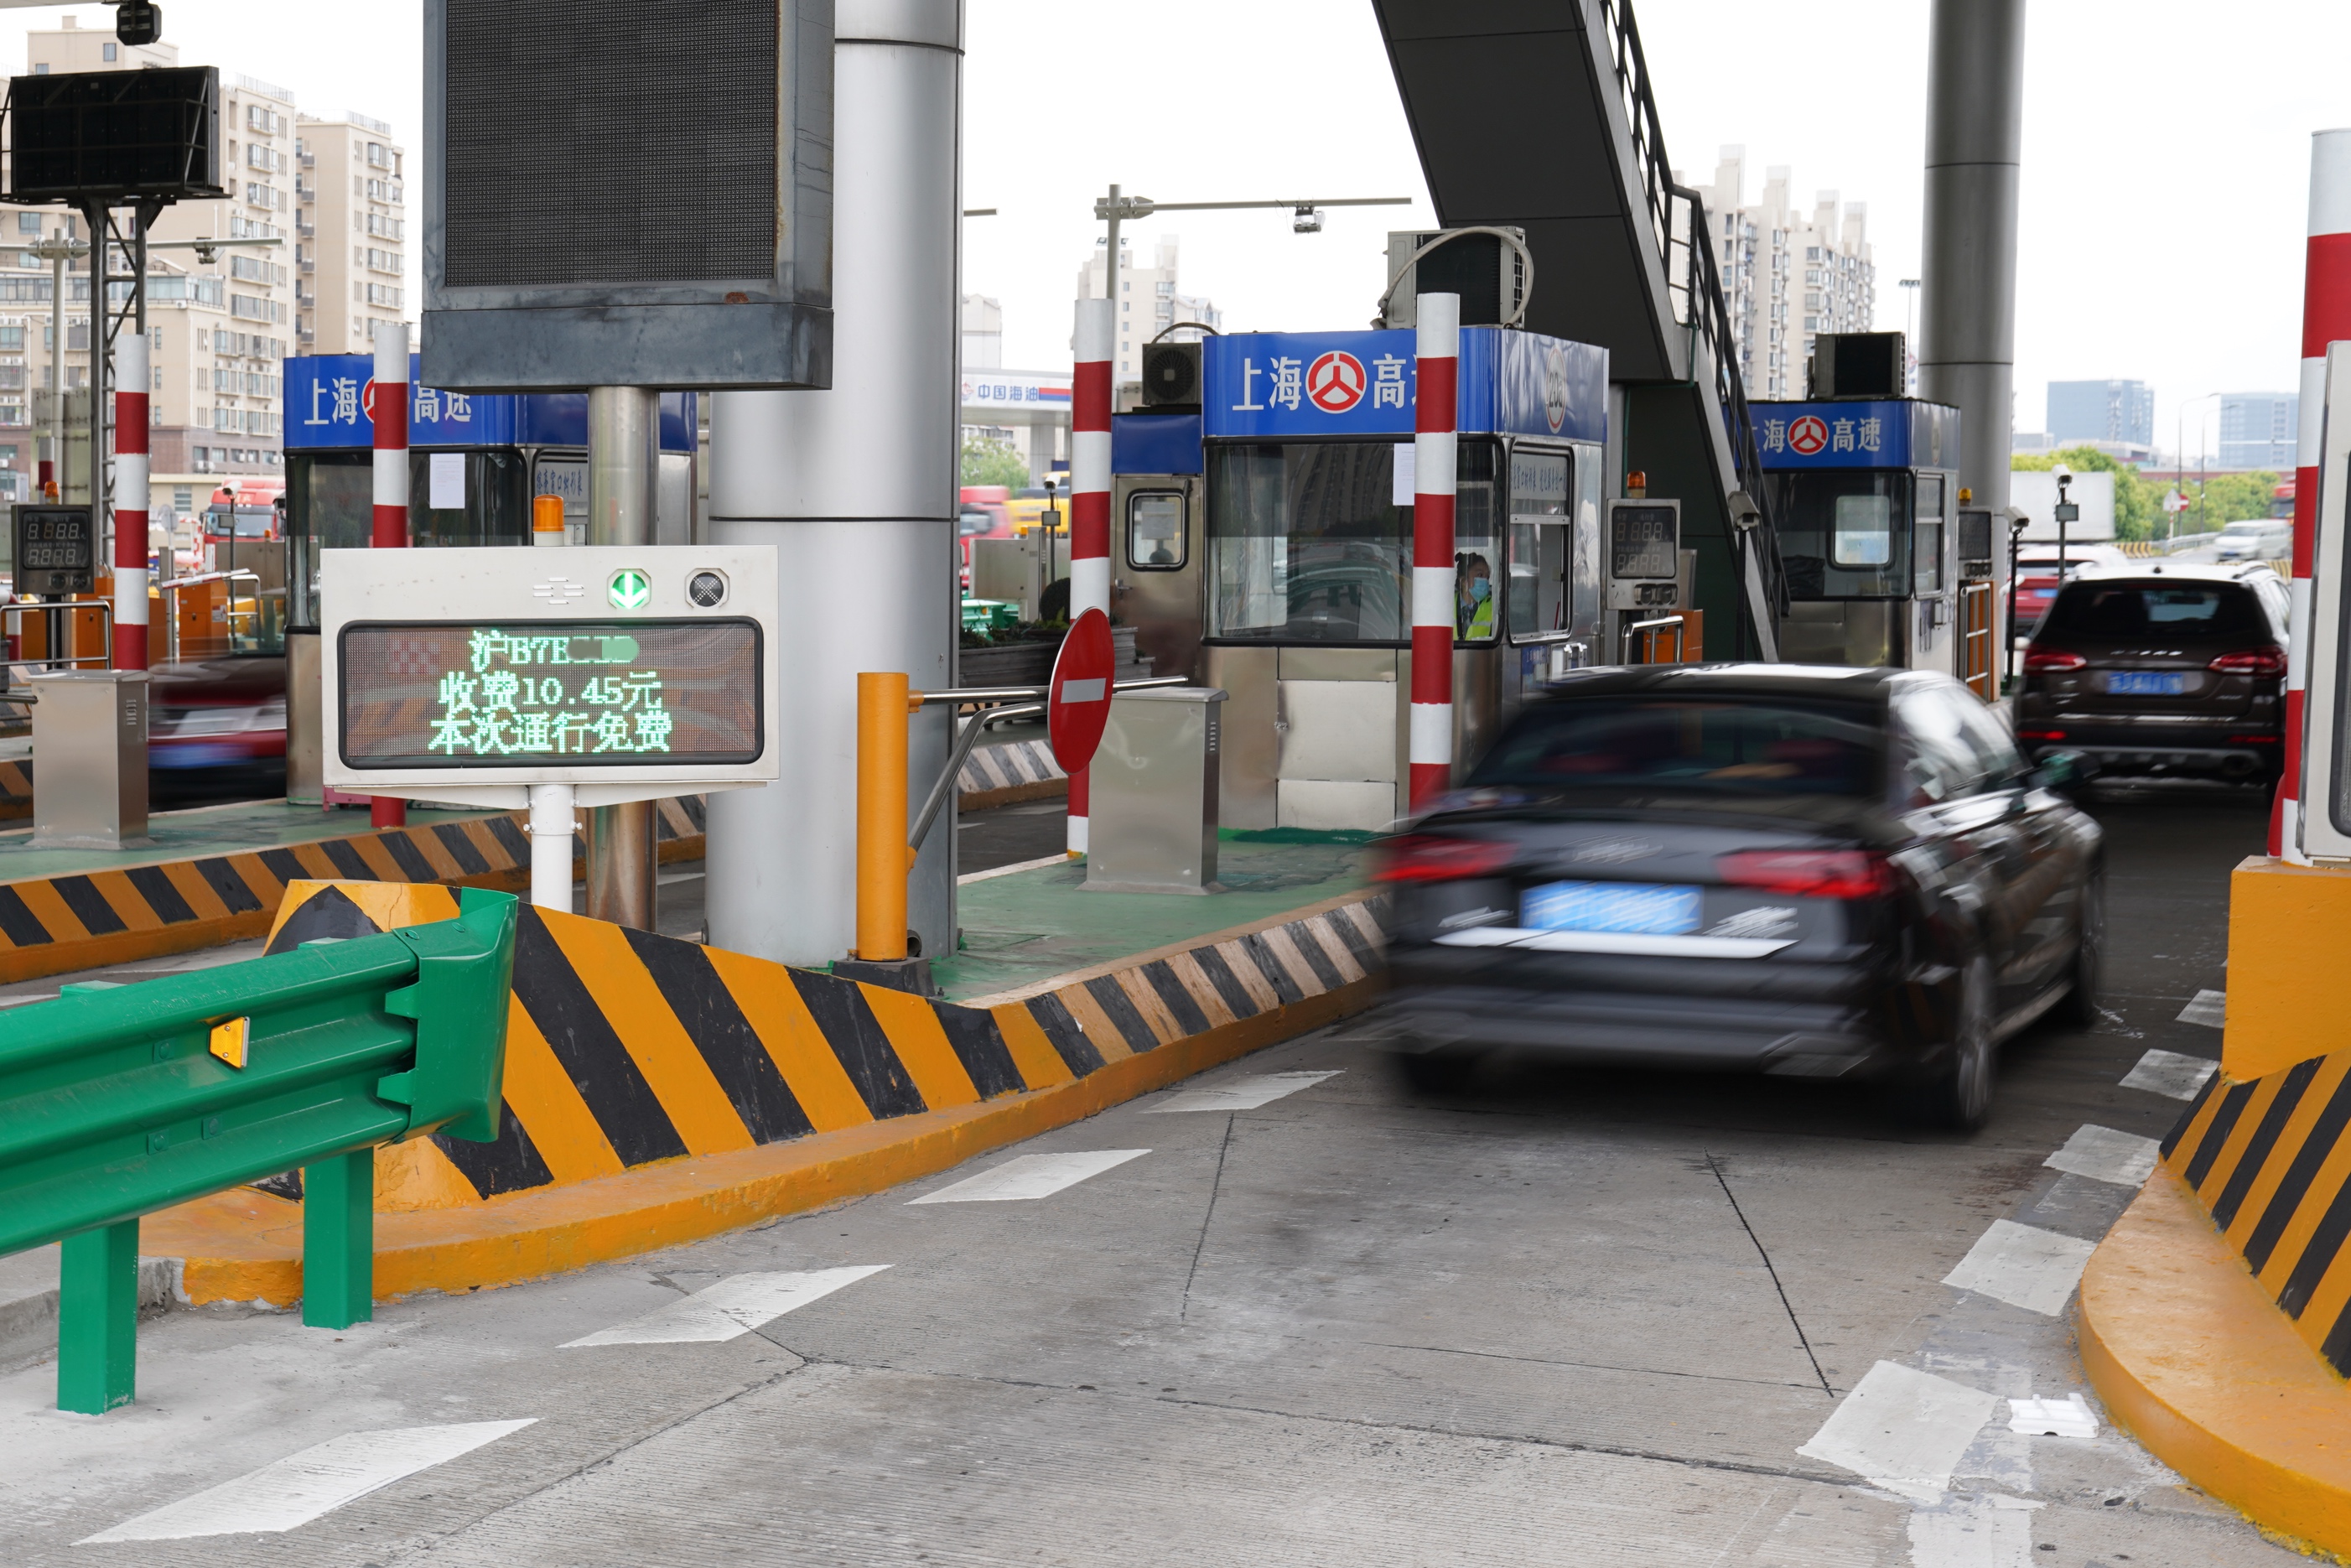 高速收费口显示屏将显示通行费金额,上海正开展实车测试验证